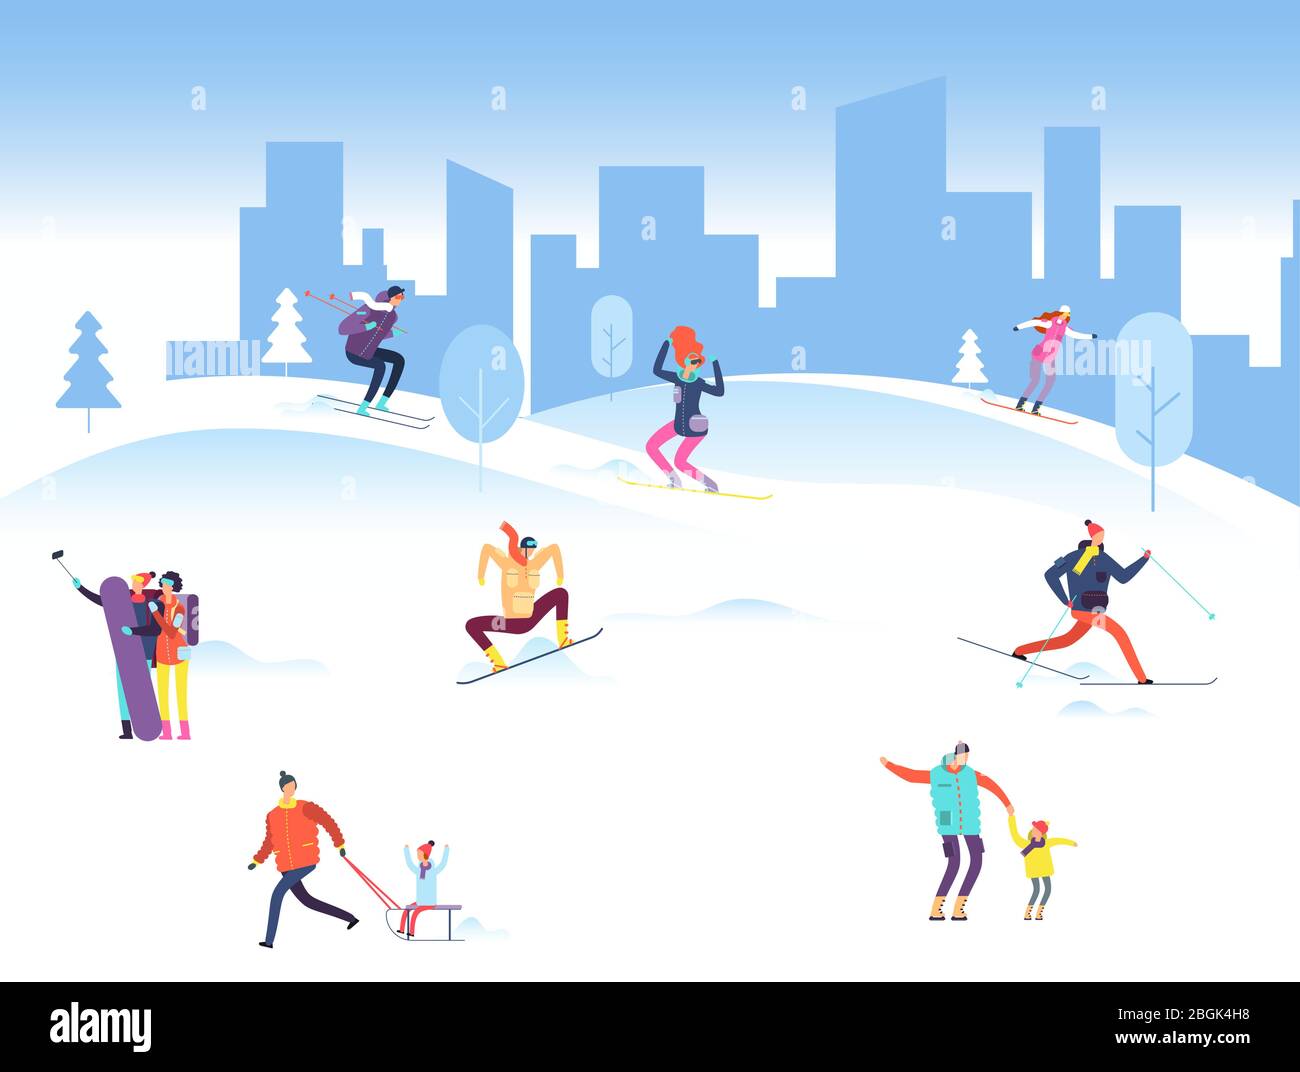 Joyeux noël avec les gens dans le parc d'hiver. Famille, adulte et enfant snowboard et ski en plein air. Illustration vectorielle. Ski, snowboard en montagne Illustration de Vecteur